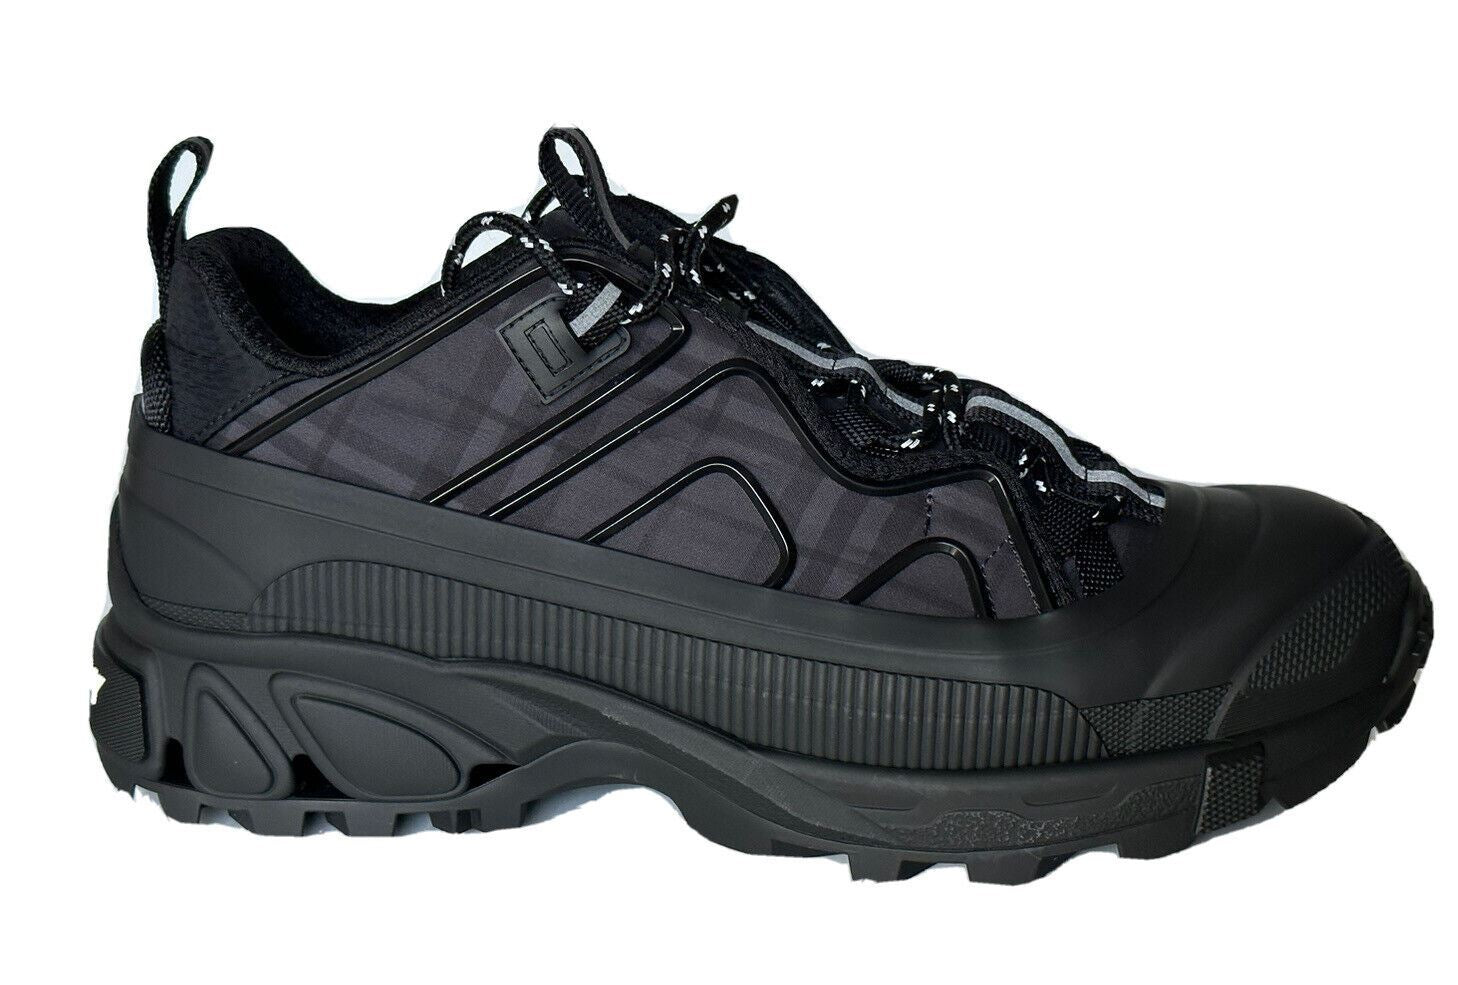 Мужские темно-серые кроссовки Burberry Arthur Dark Charcoal за 890 долларов США (42 евро) 8042584 IT 